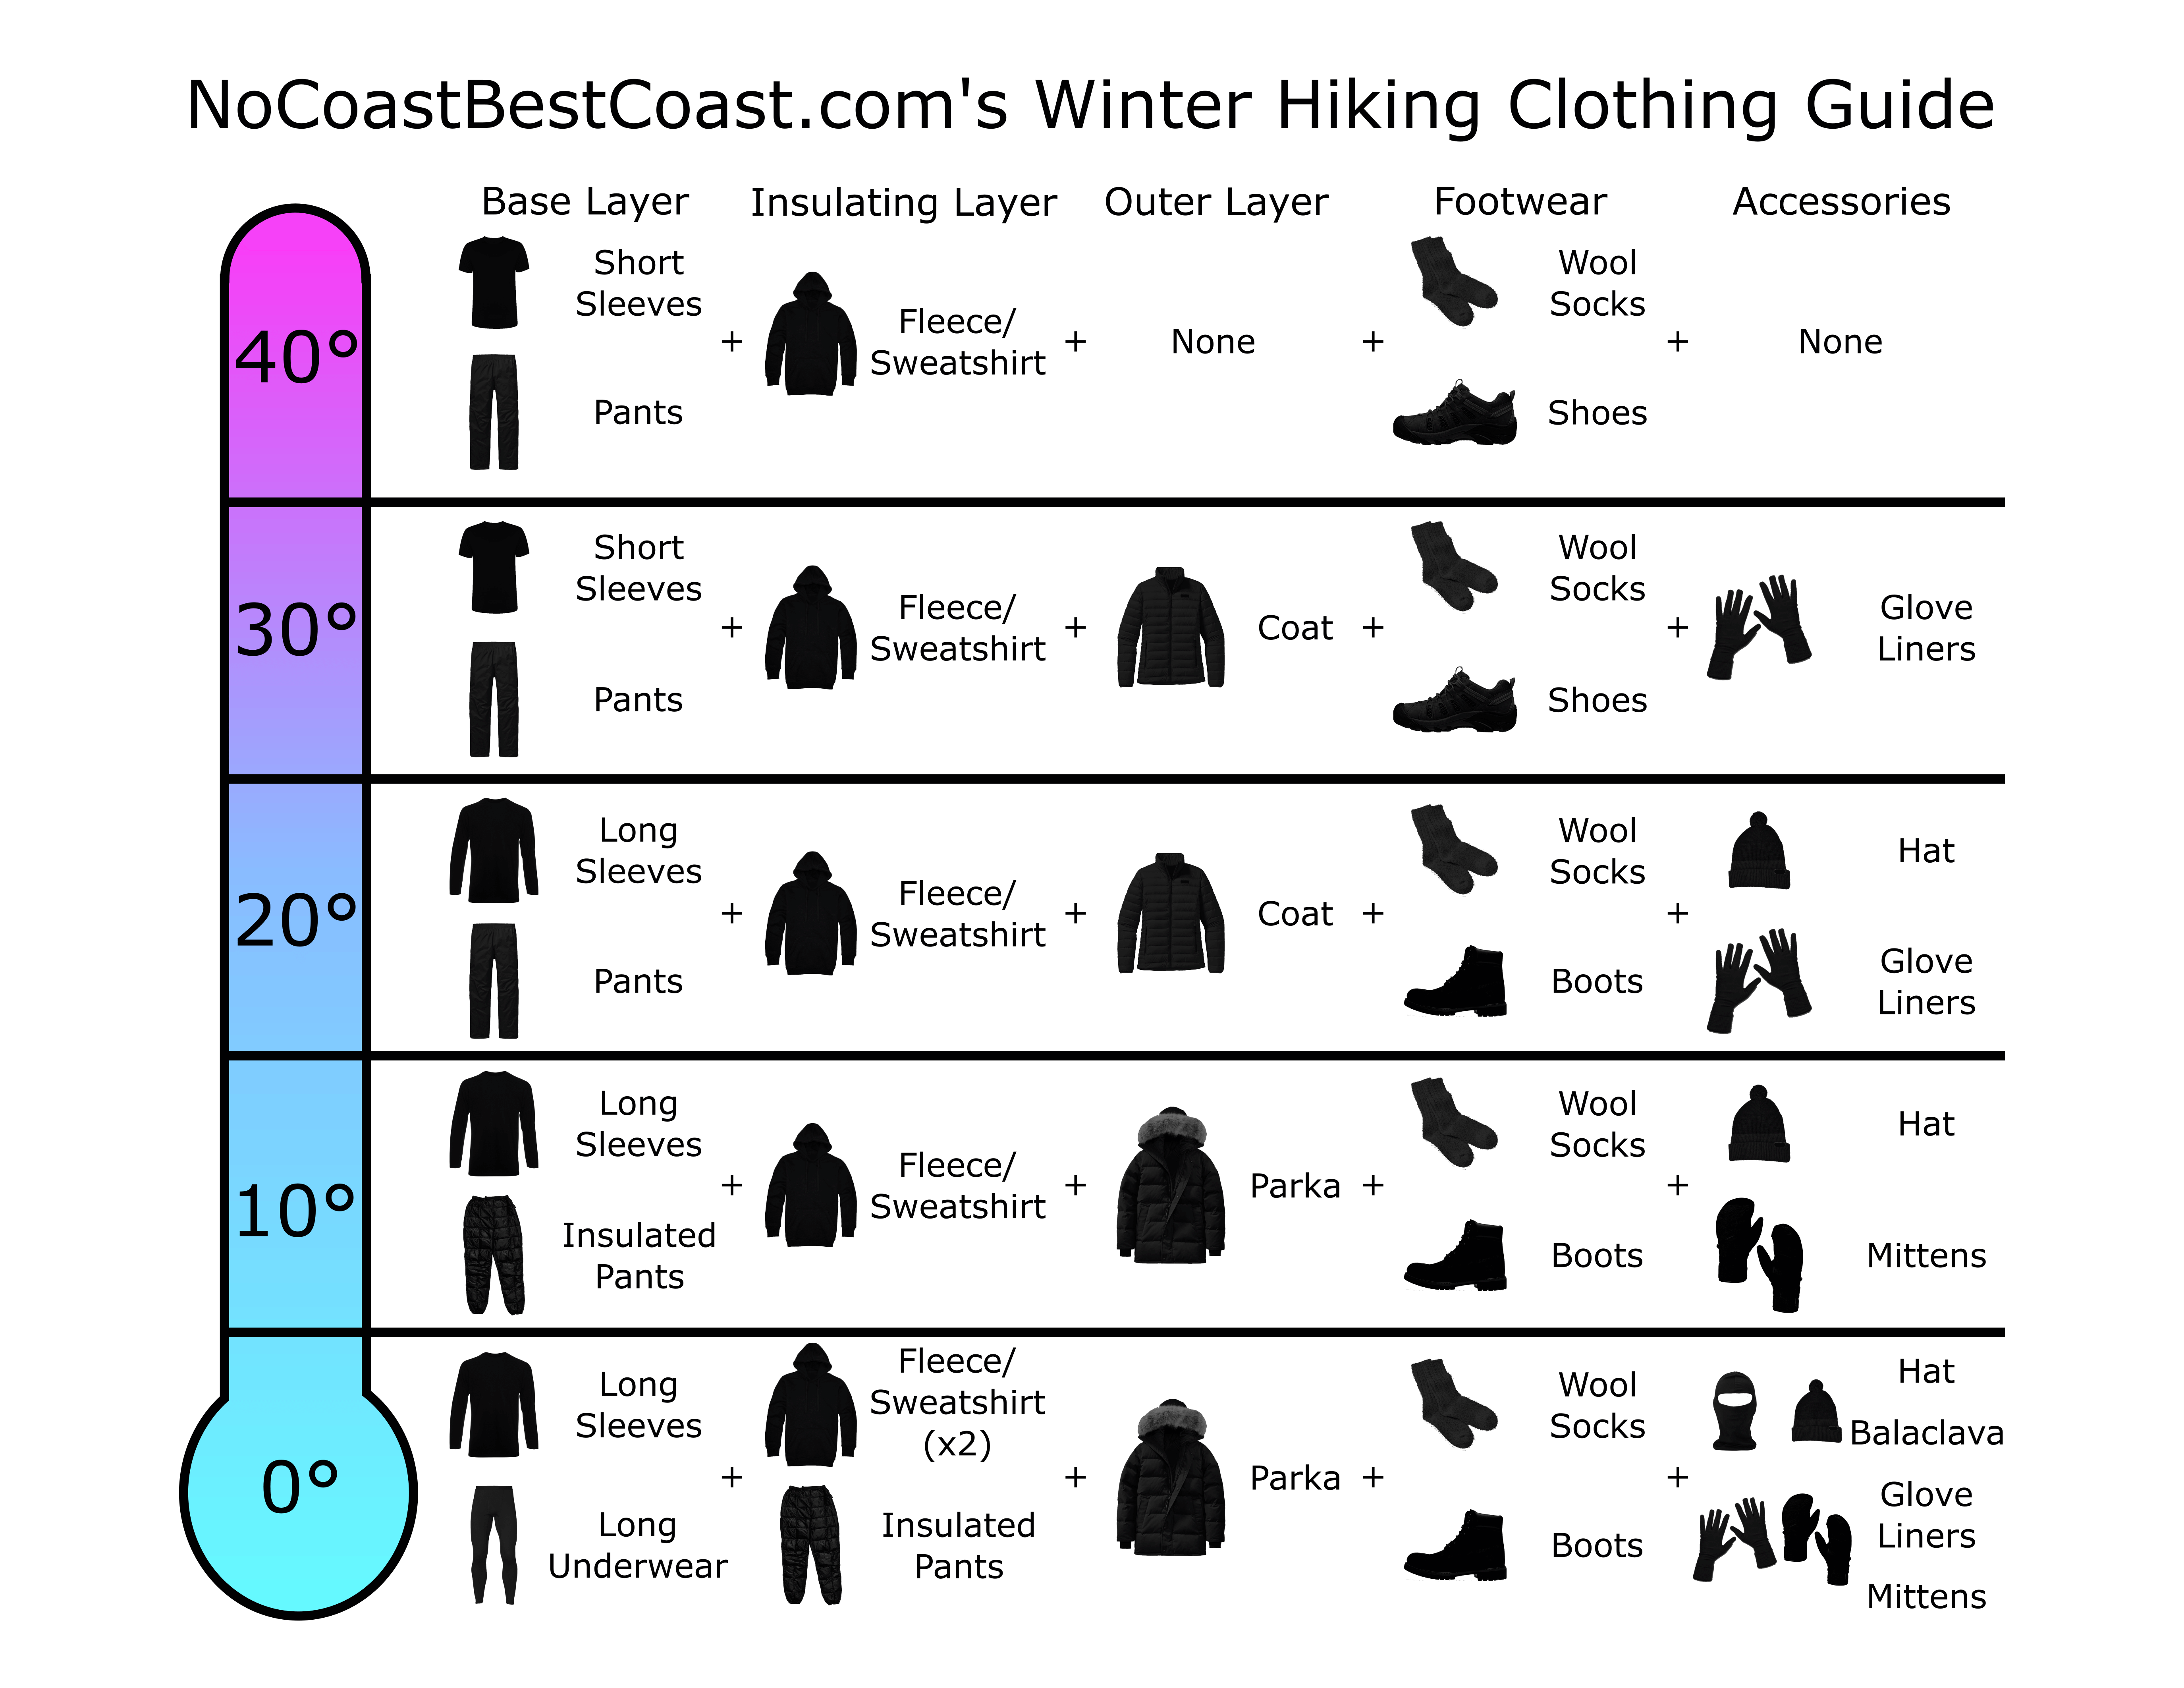 How to Dress for Winter Outdoor Activities